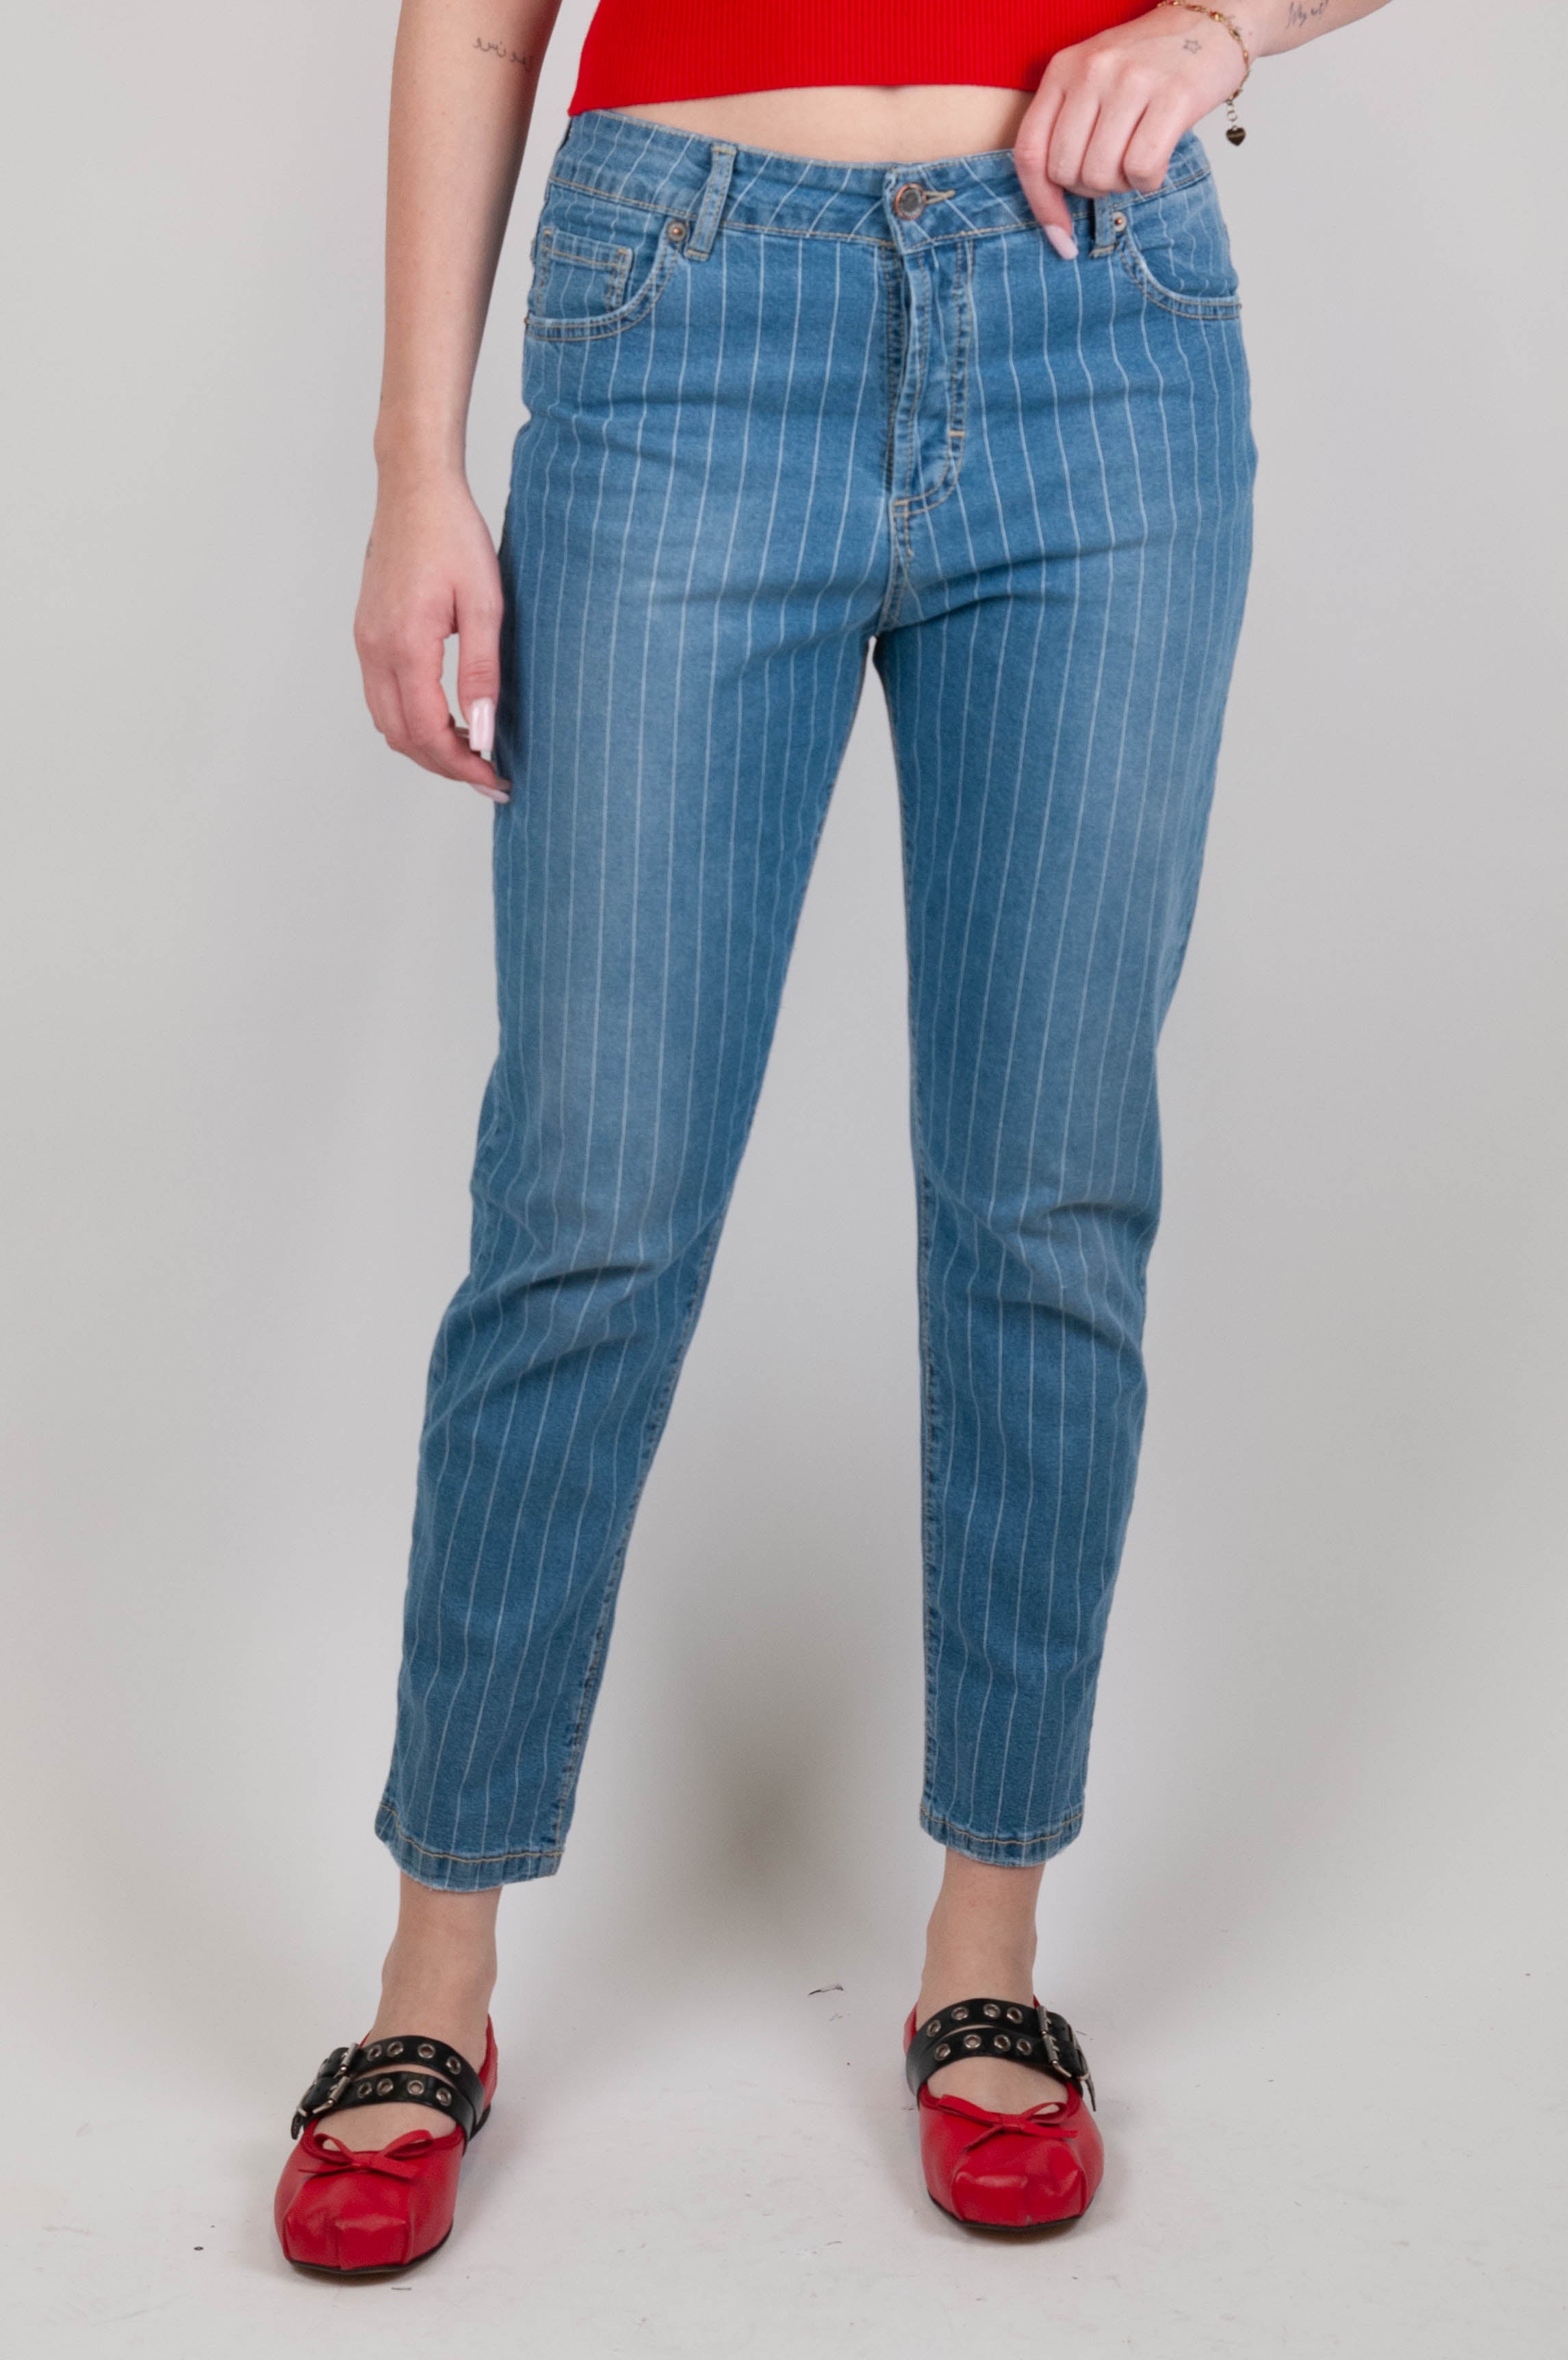 Souvenir - Pinstriped jeans